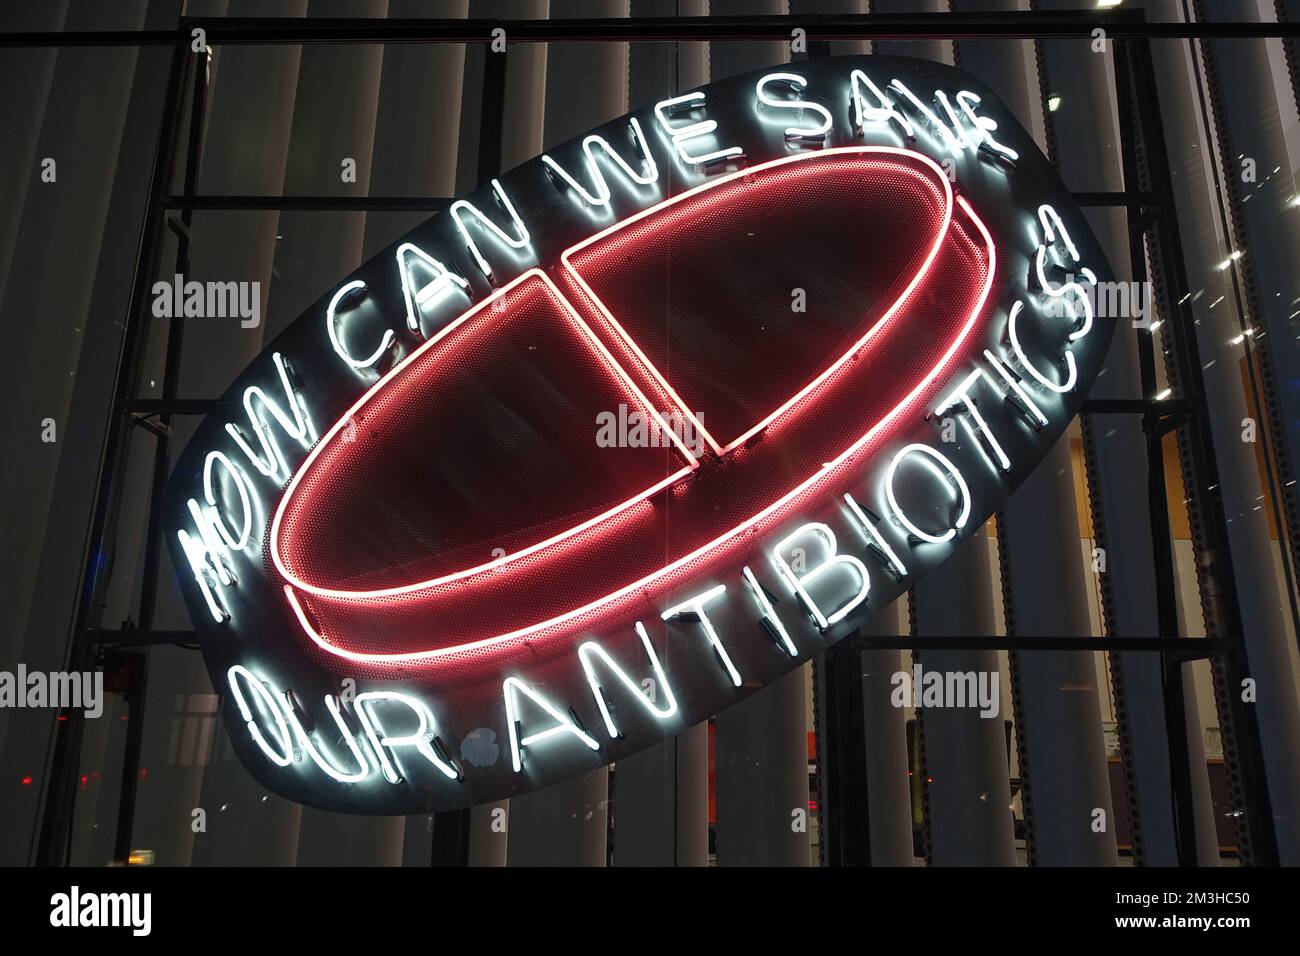 Panneau publicitaire, bâtiment Wellcome, Londres, illustrant la lutte contre la résistance aux antibiotiques Banque D'Images